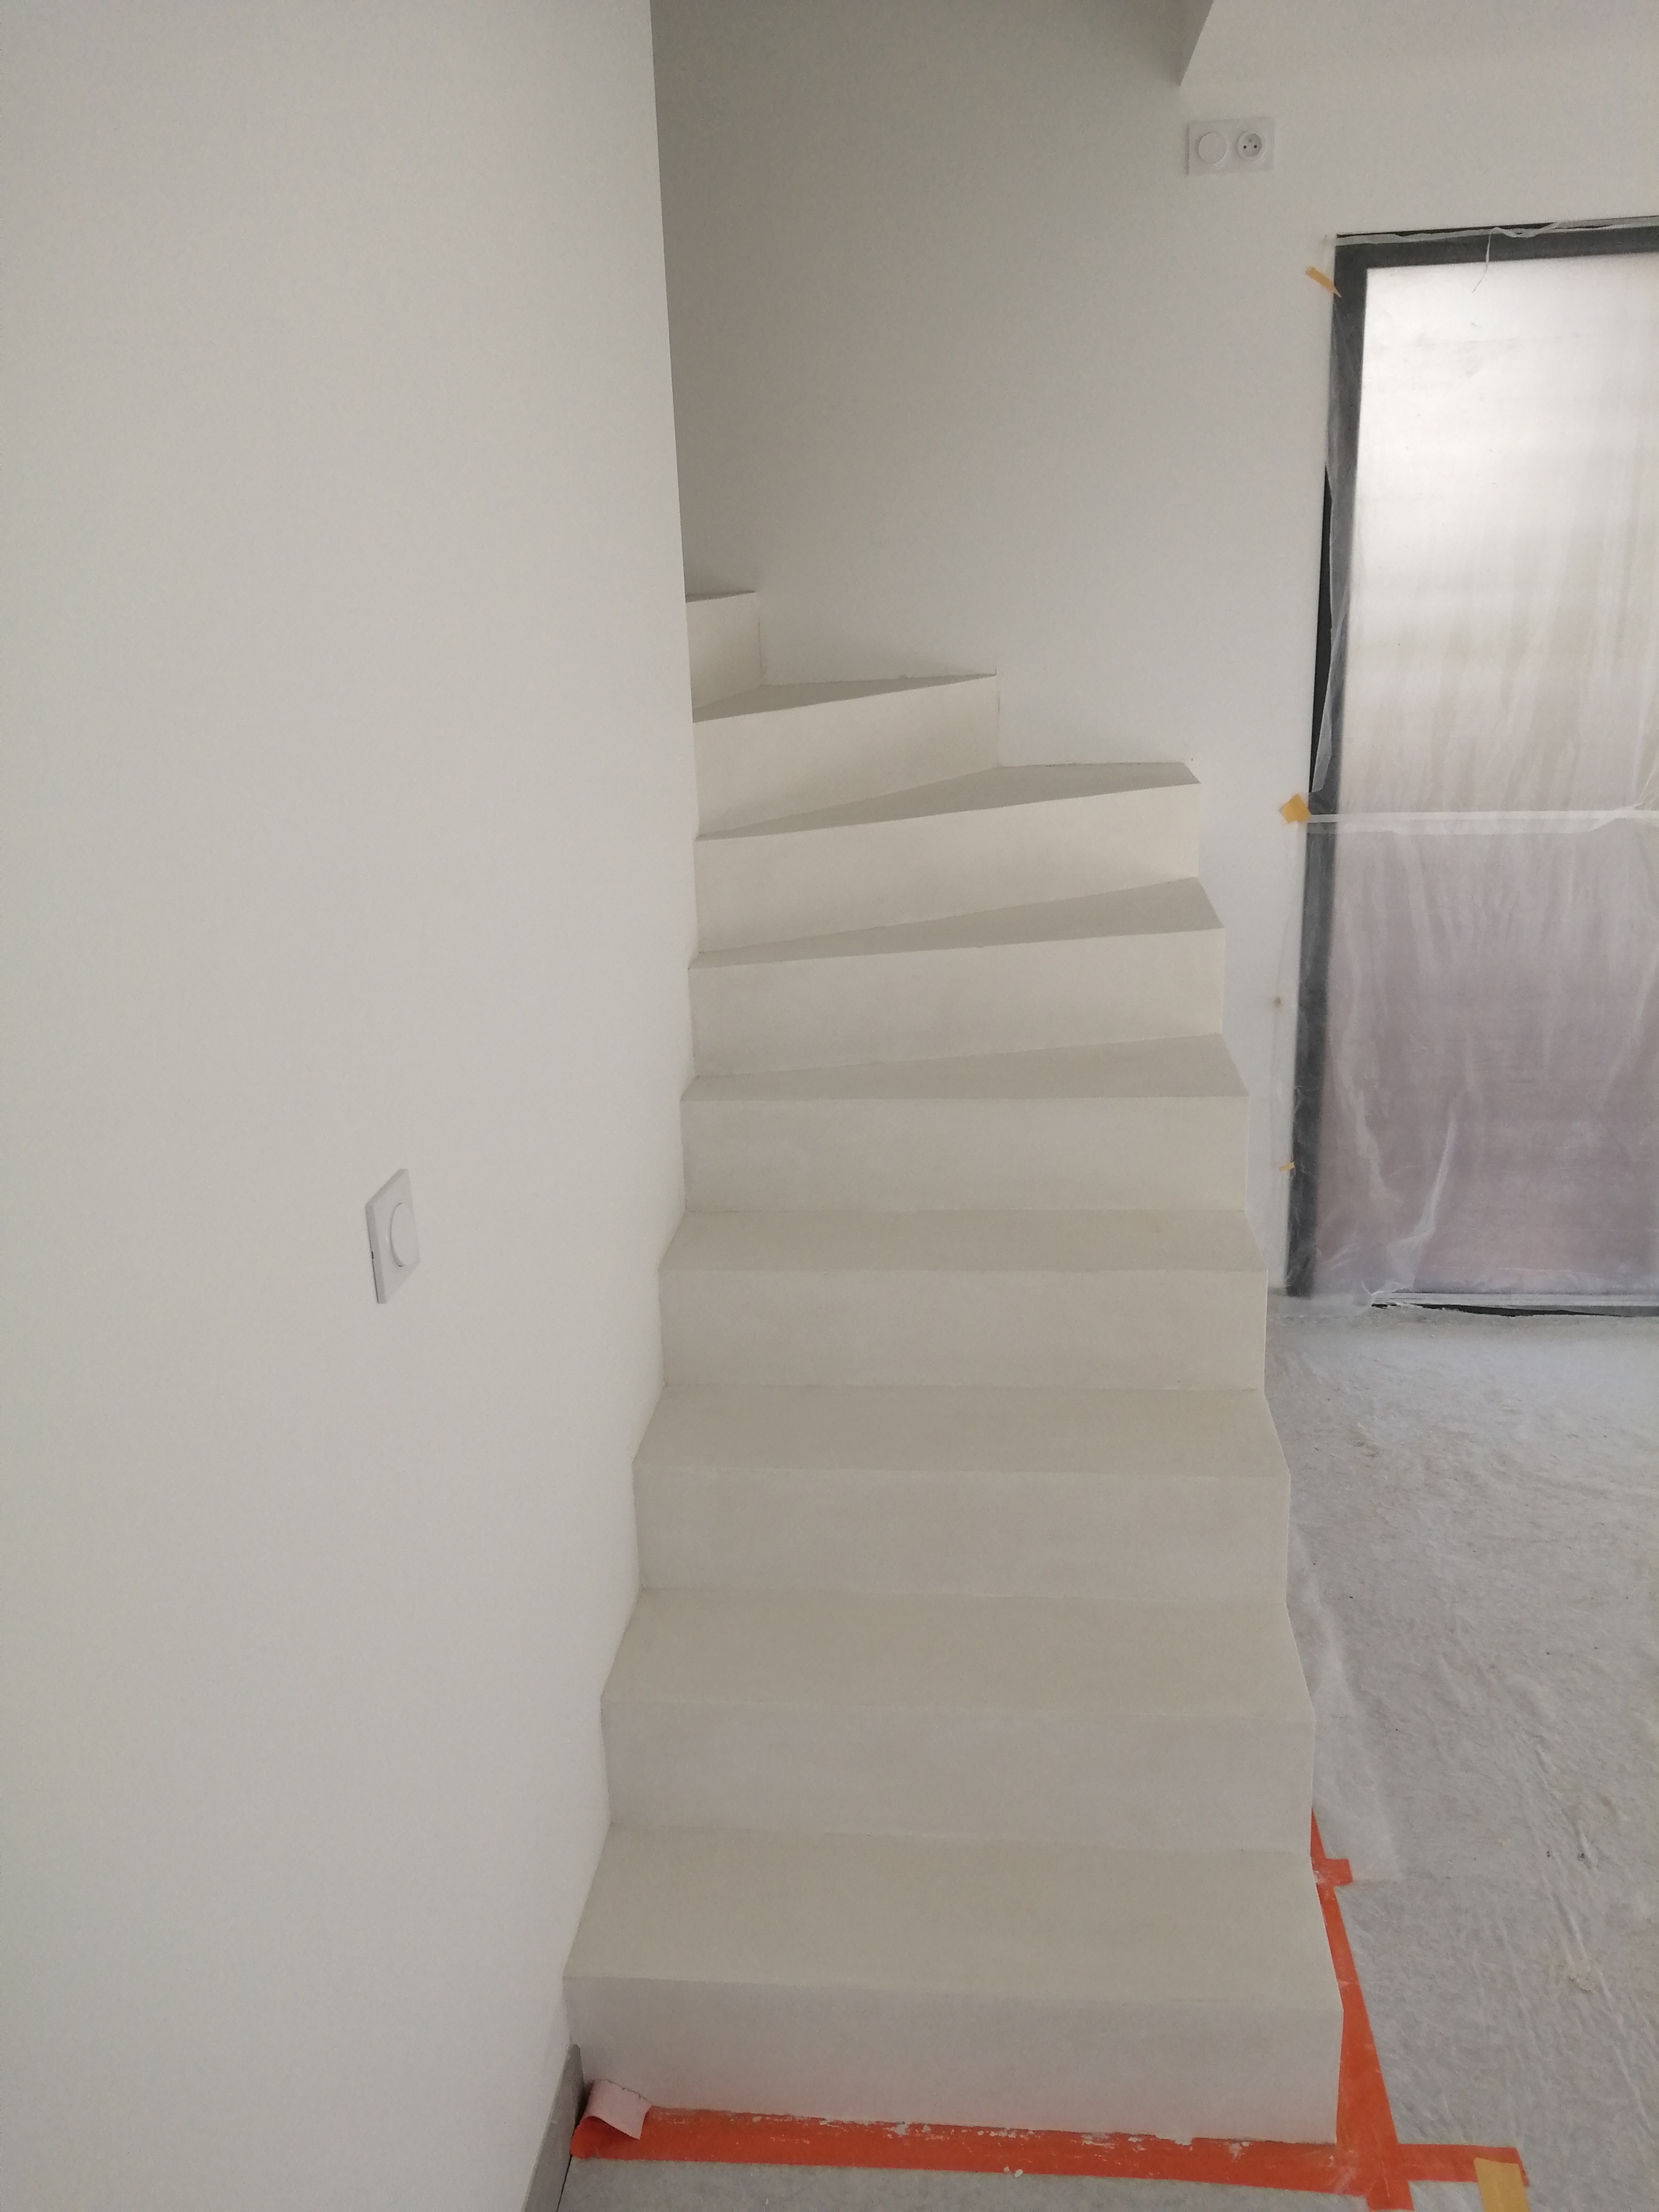 Béton ciré couleur blanc crème ou everest sur un escalier dans maison en construction